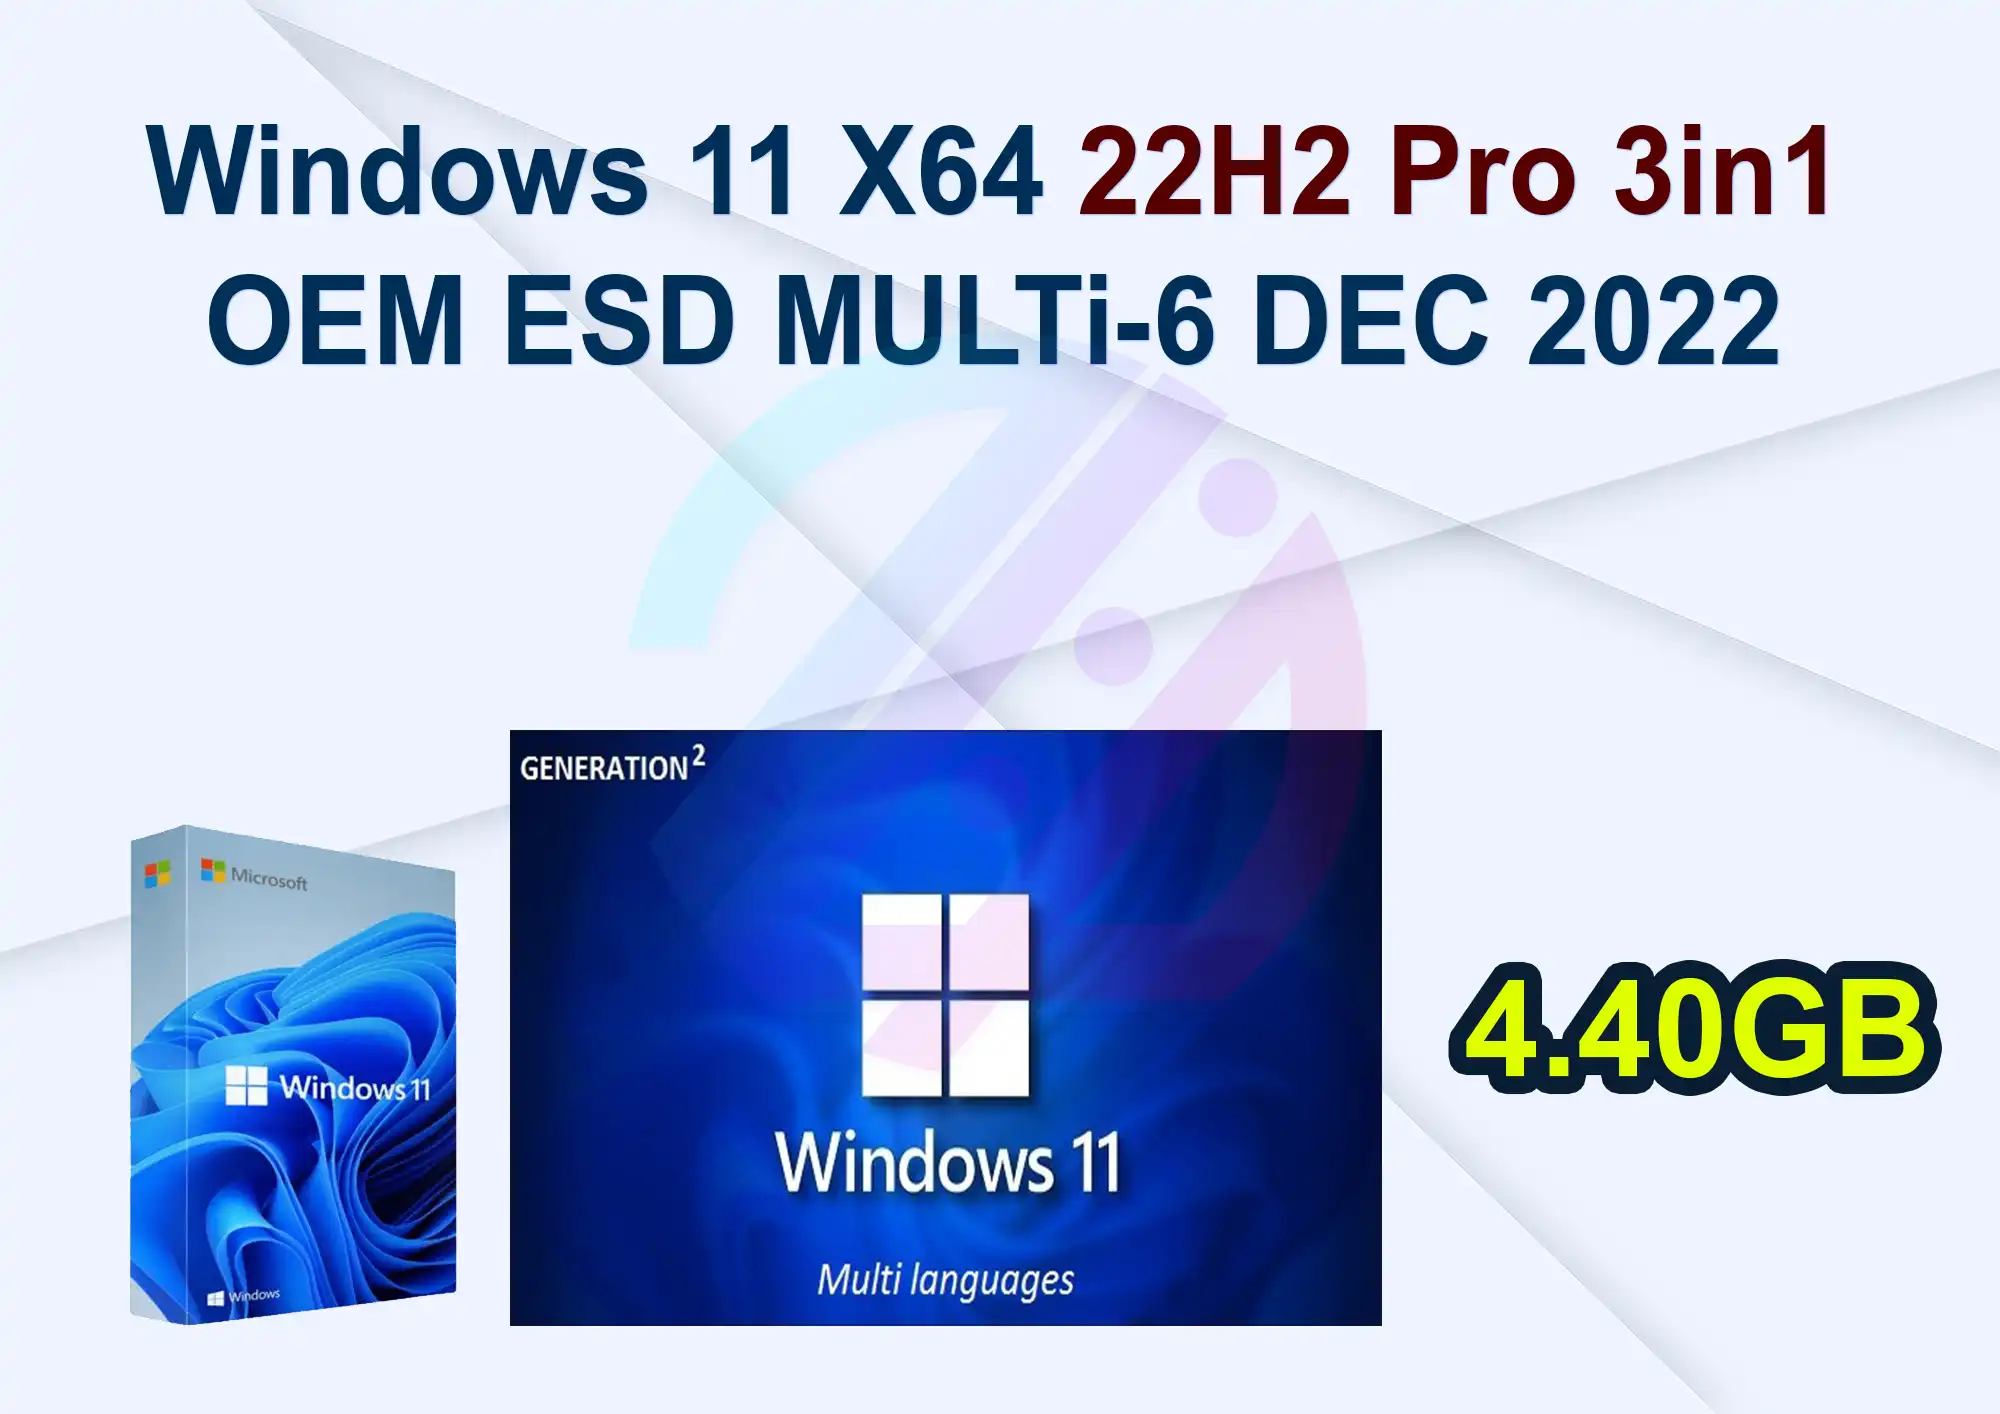 Windows 11 X64 22H2 Pro 3in1 OEM ESD MULTi-6 DEC 2022